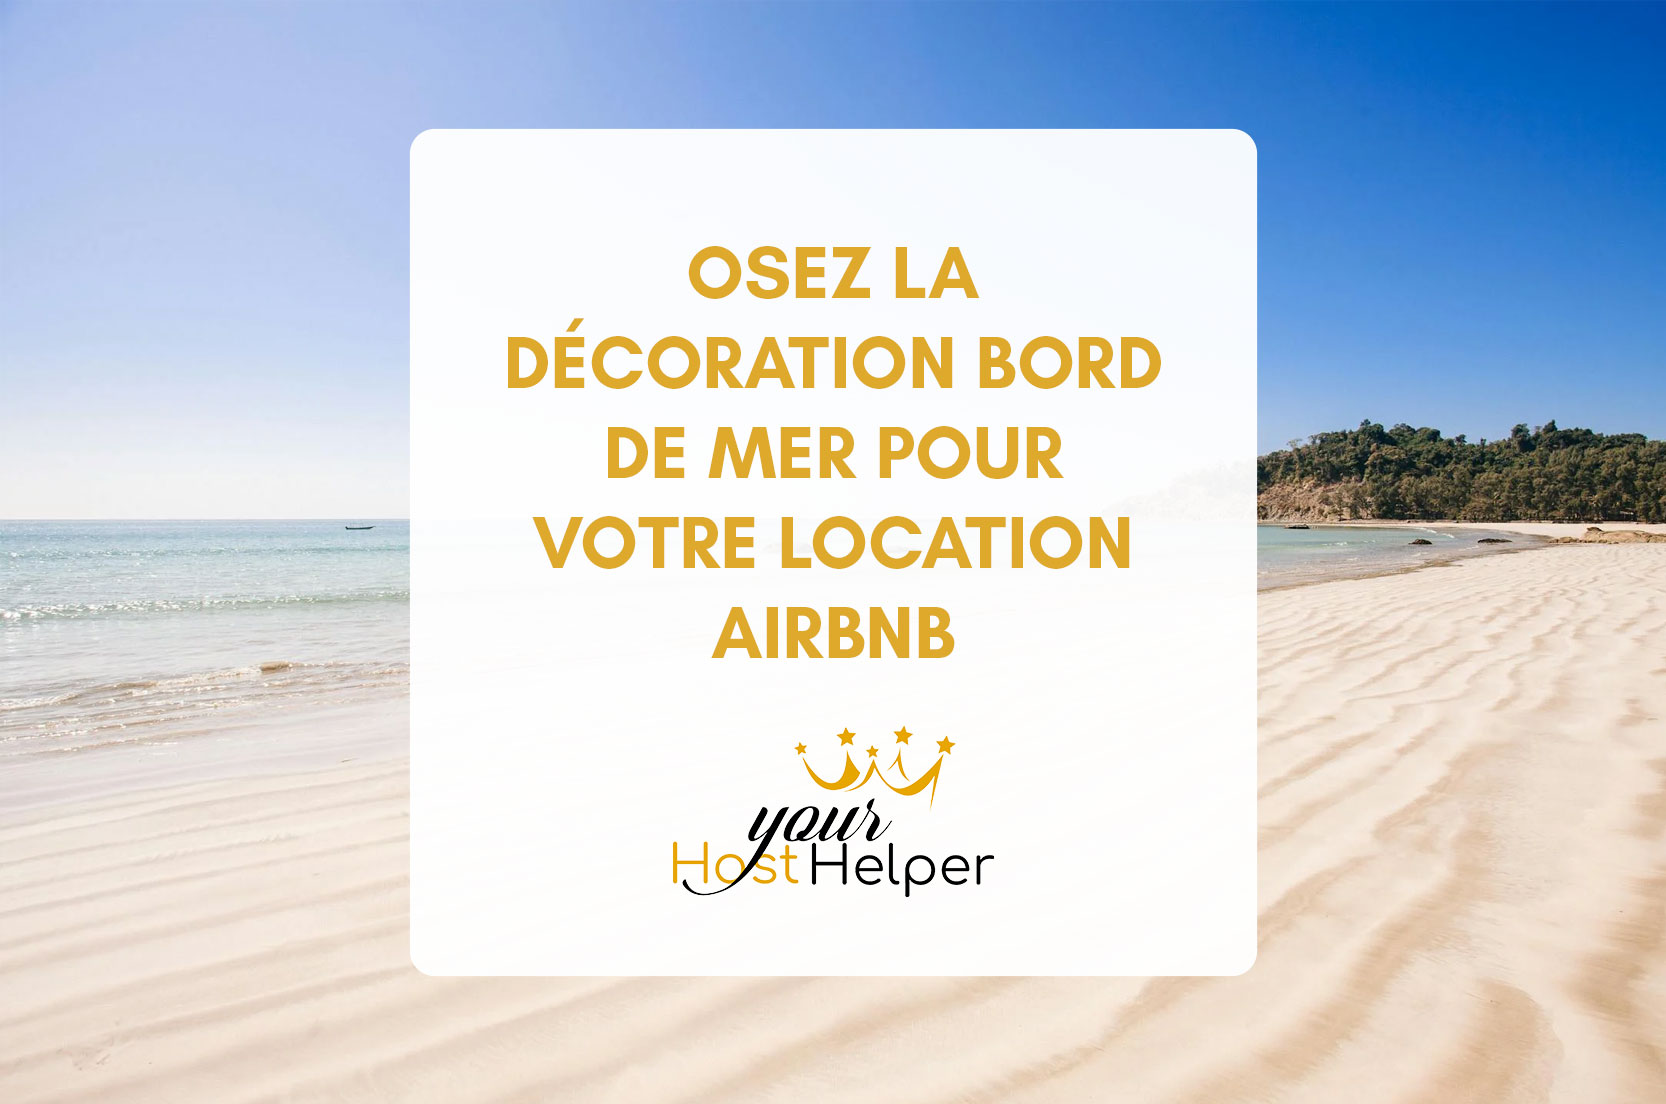 You are currently viewing Osez la décoration bord de mer pour votre location Airbnb